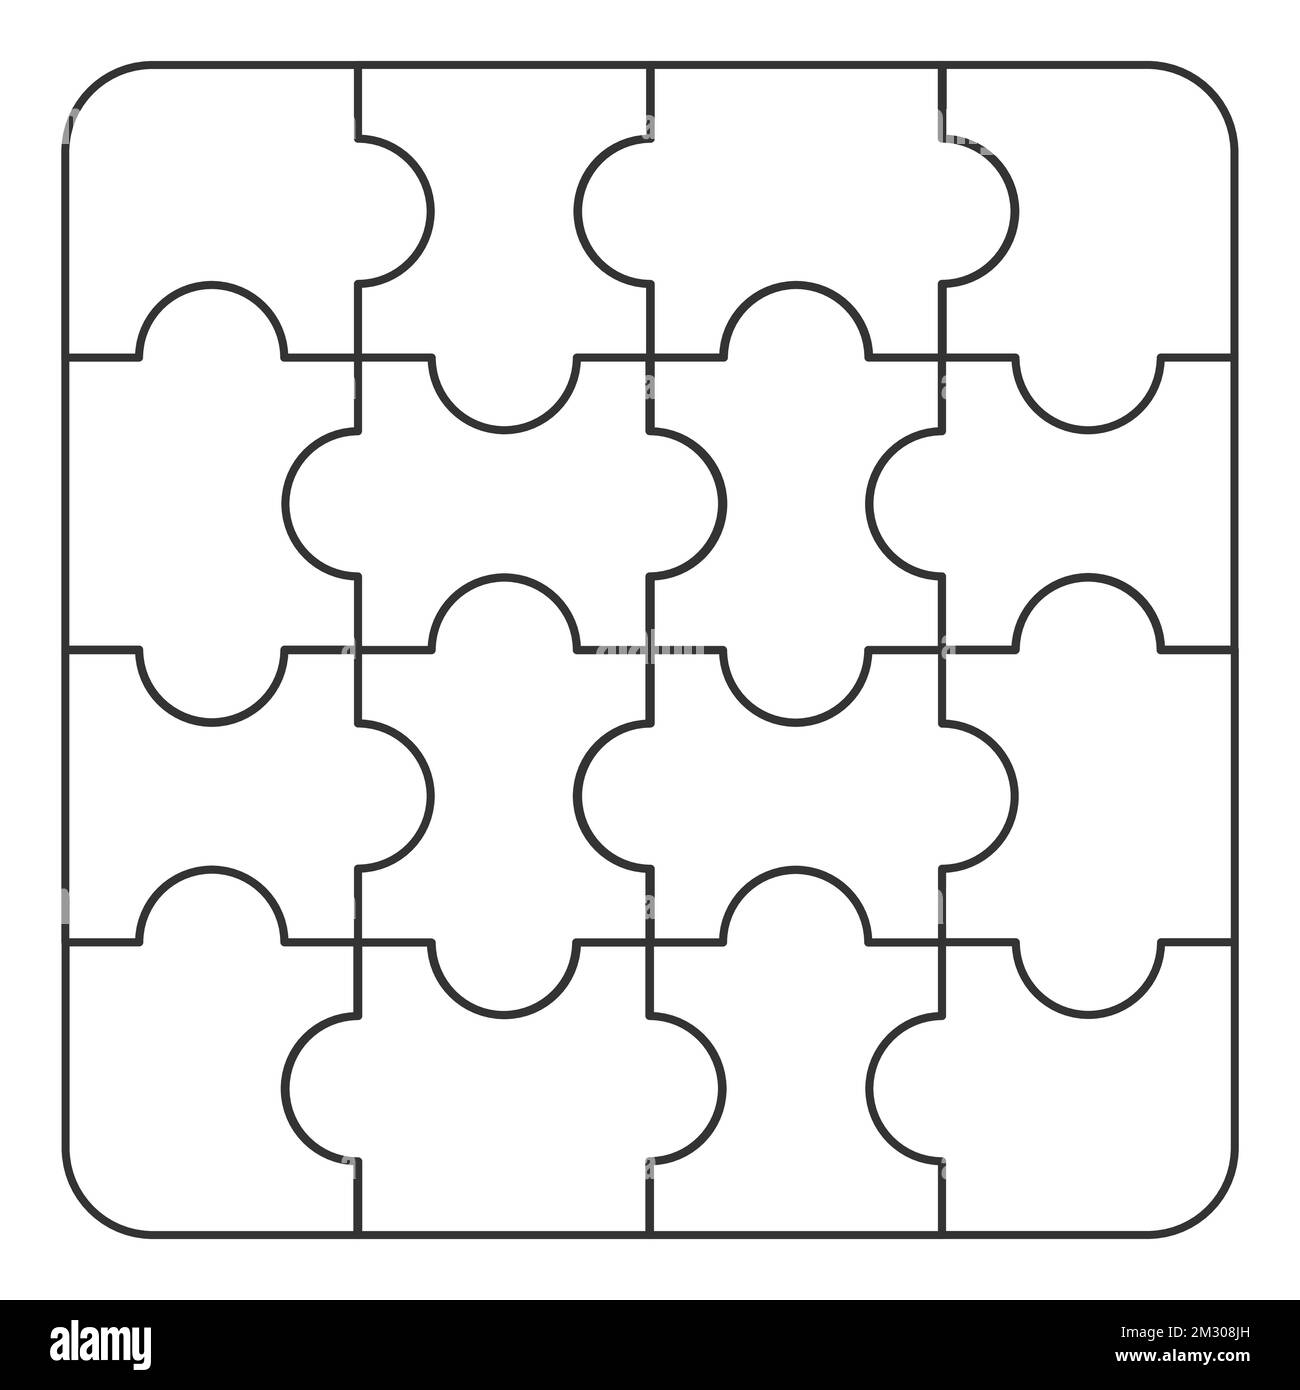 10 piezas puzzle recortadas de stock - Alamy